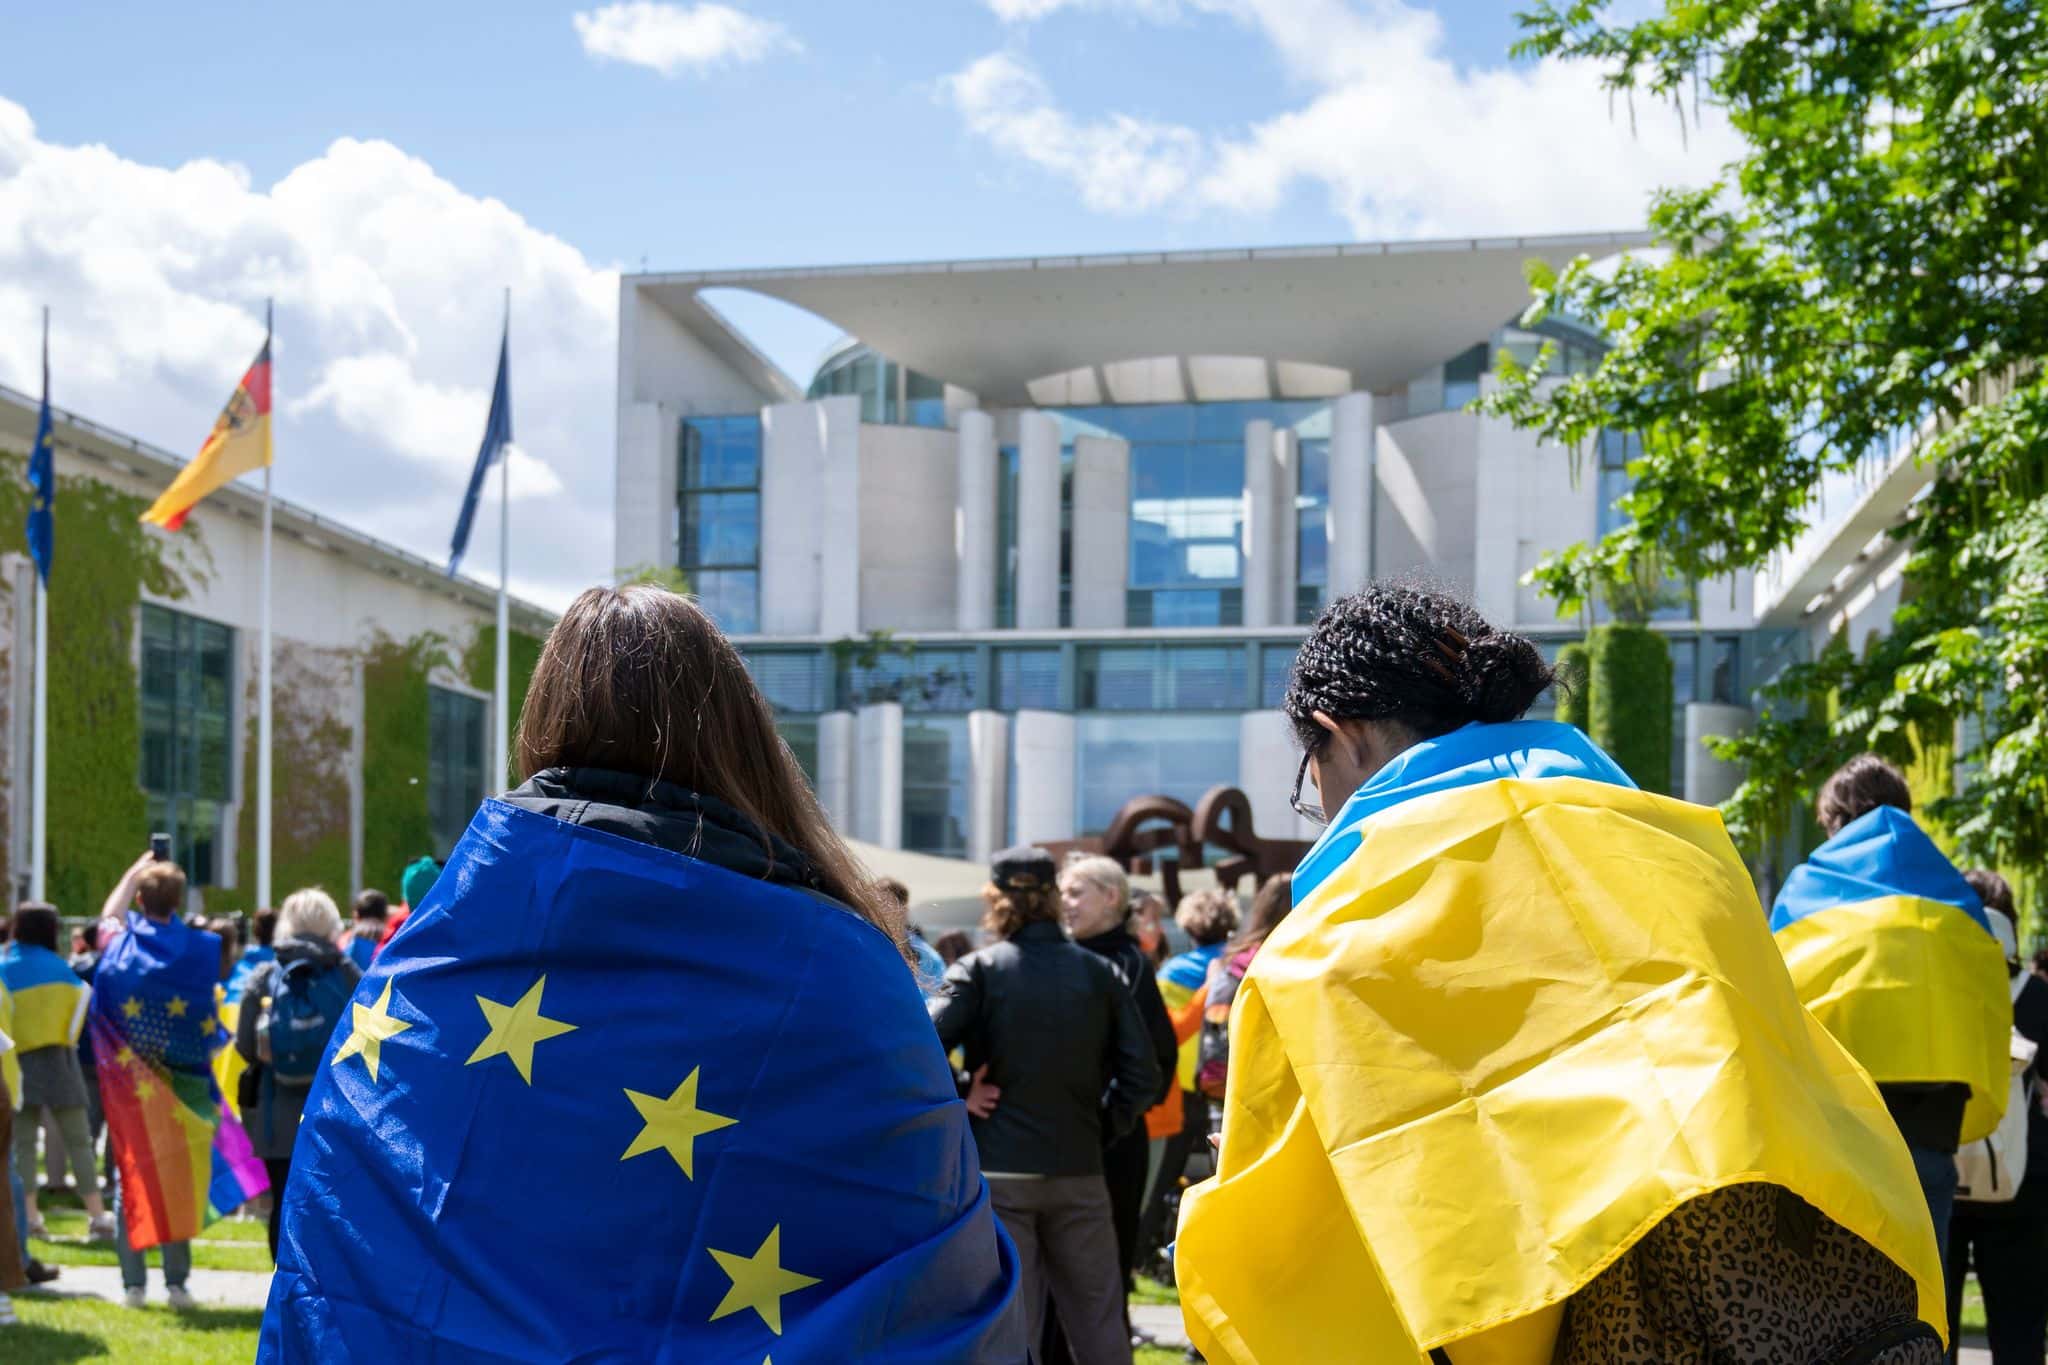 EU-Kandidatenstatus für die Ukraine: EU-Kommission gibt offizielle Entscheidung bekannt